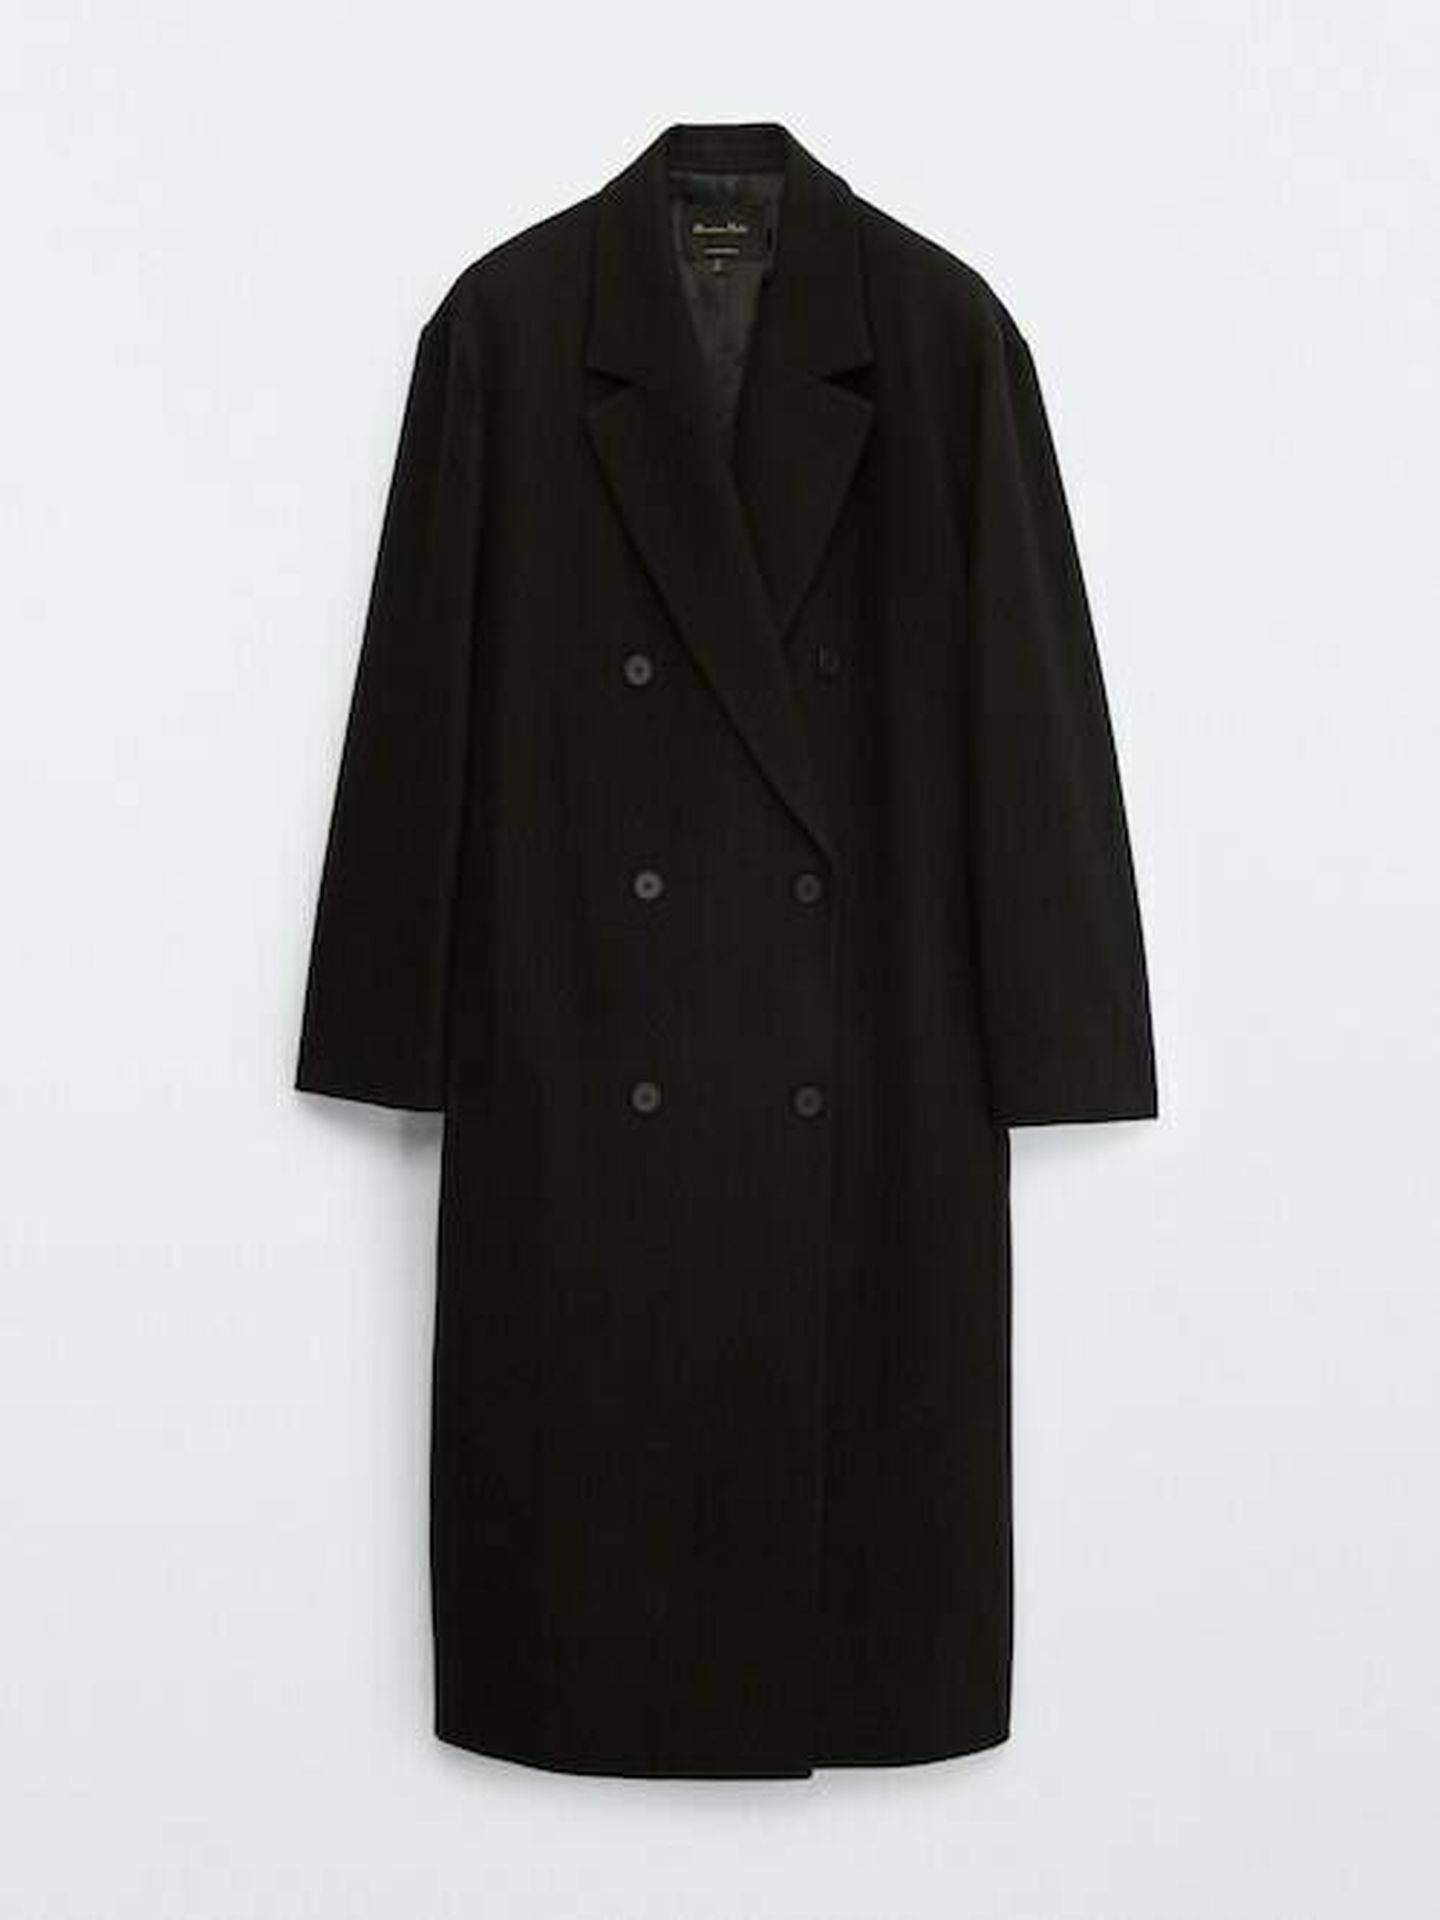 El abrigo básico negro de Massimo Dutti. (Cortesía)